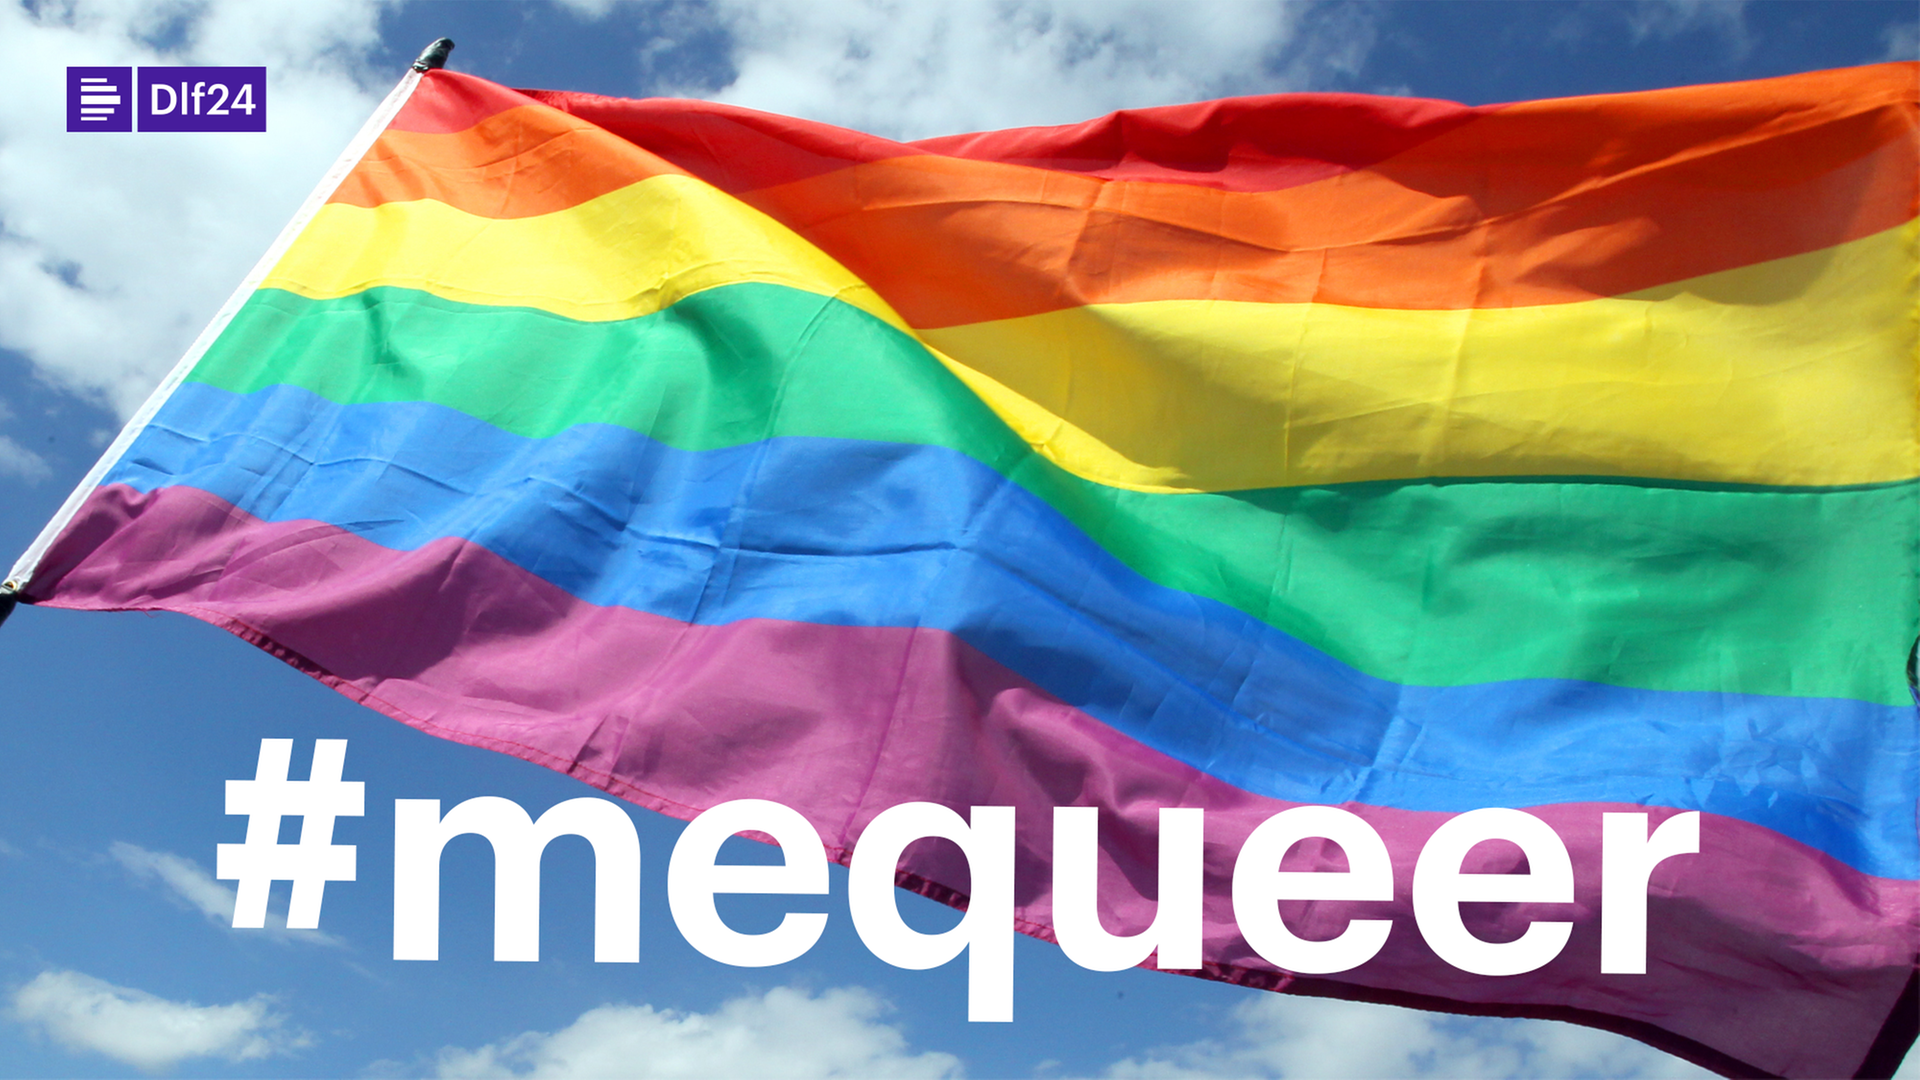 Das Foto zeigt die Regenbogenfahne mit der Aufschrift #mequeer.